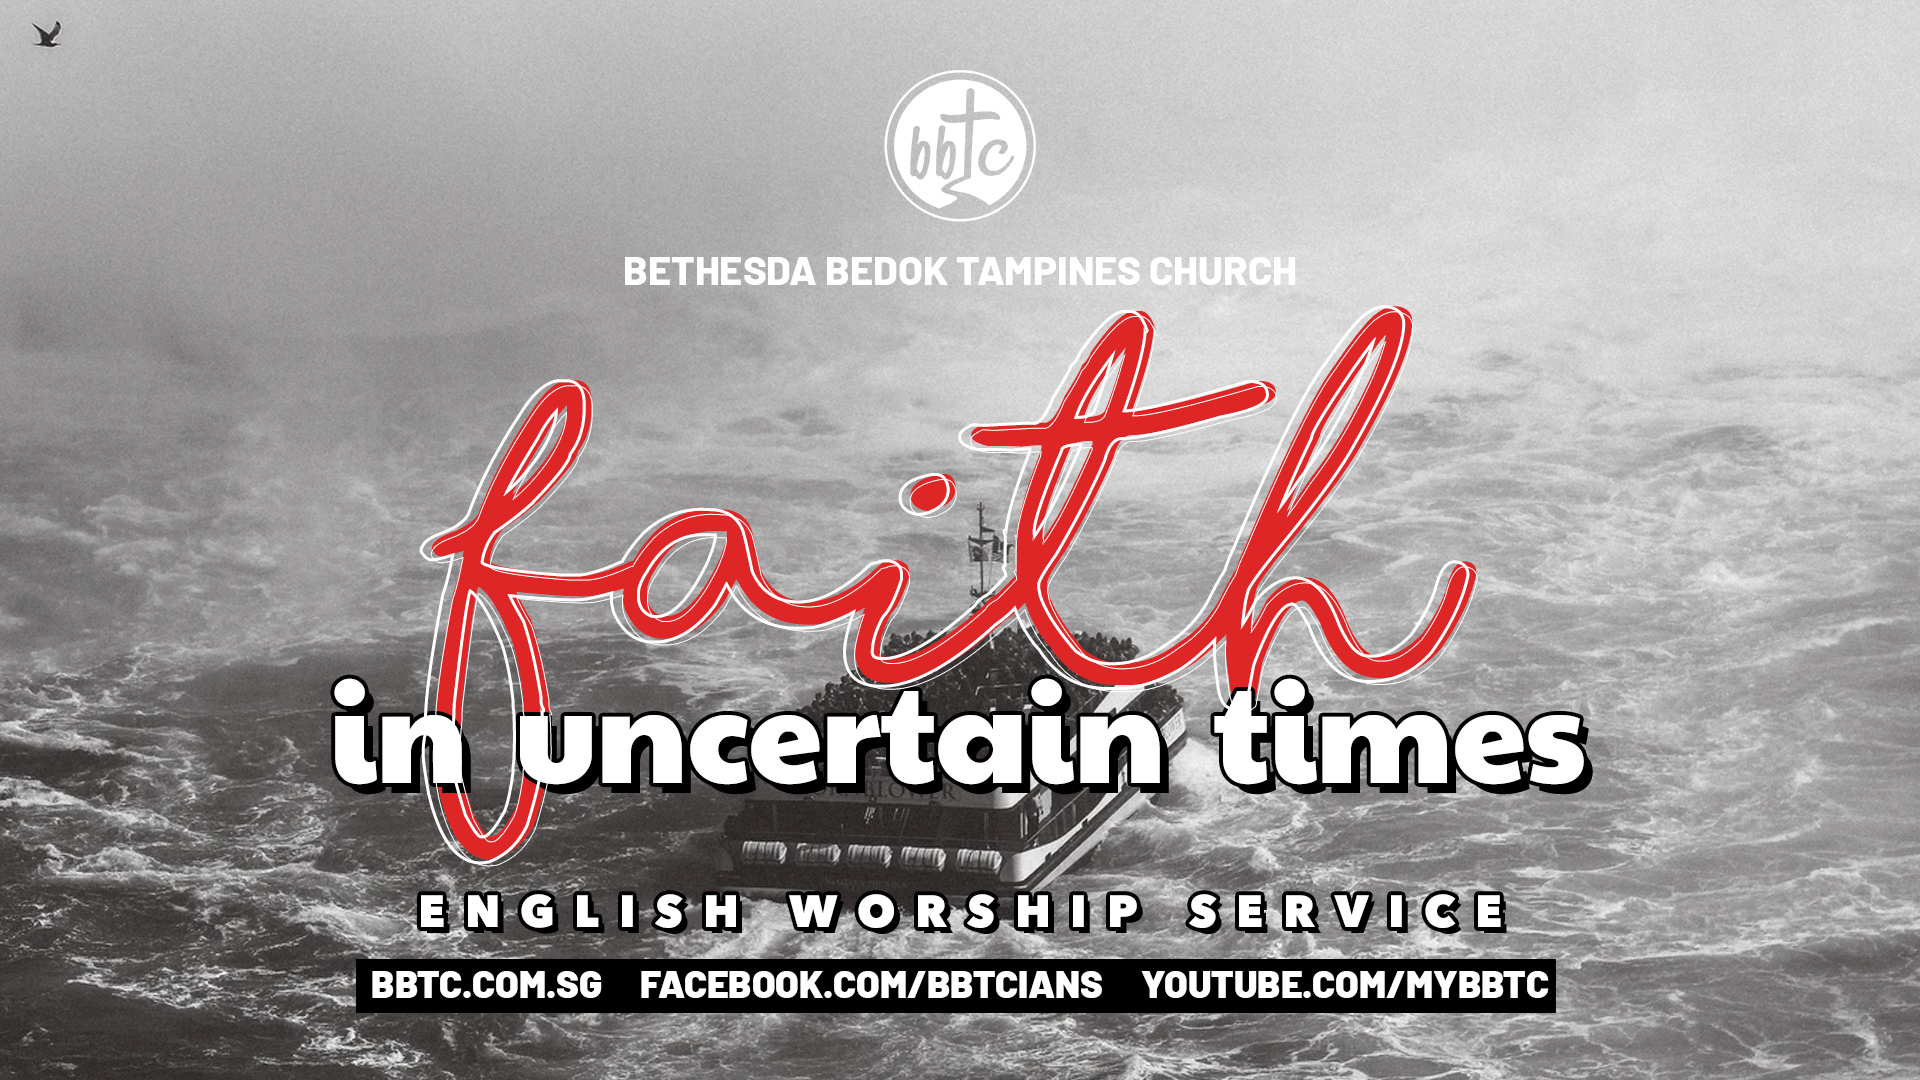 Faith in Uncertain Times